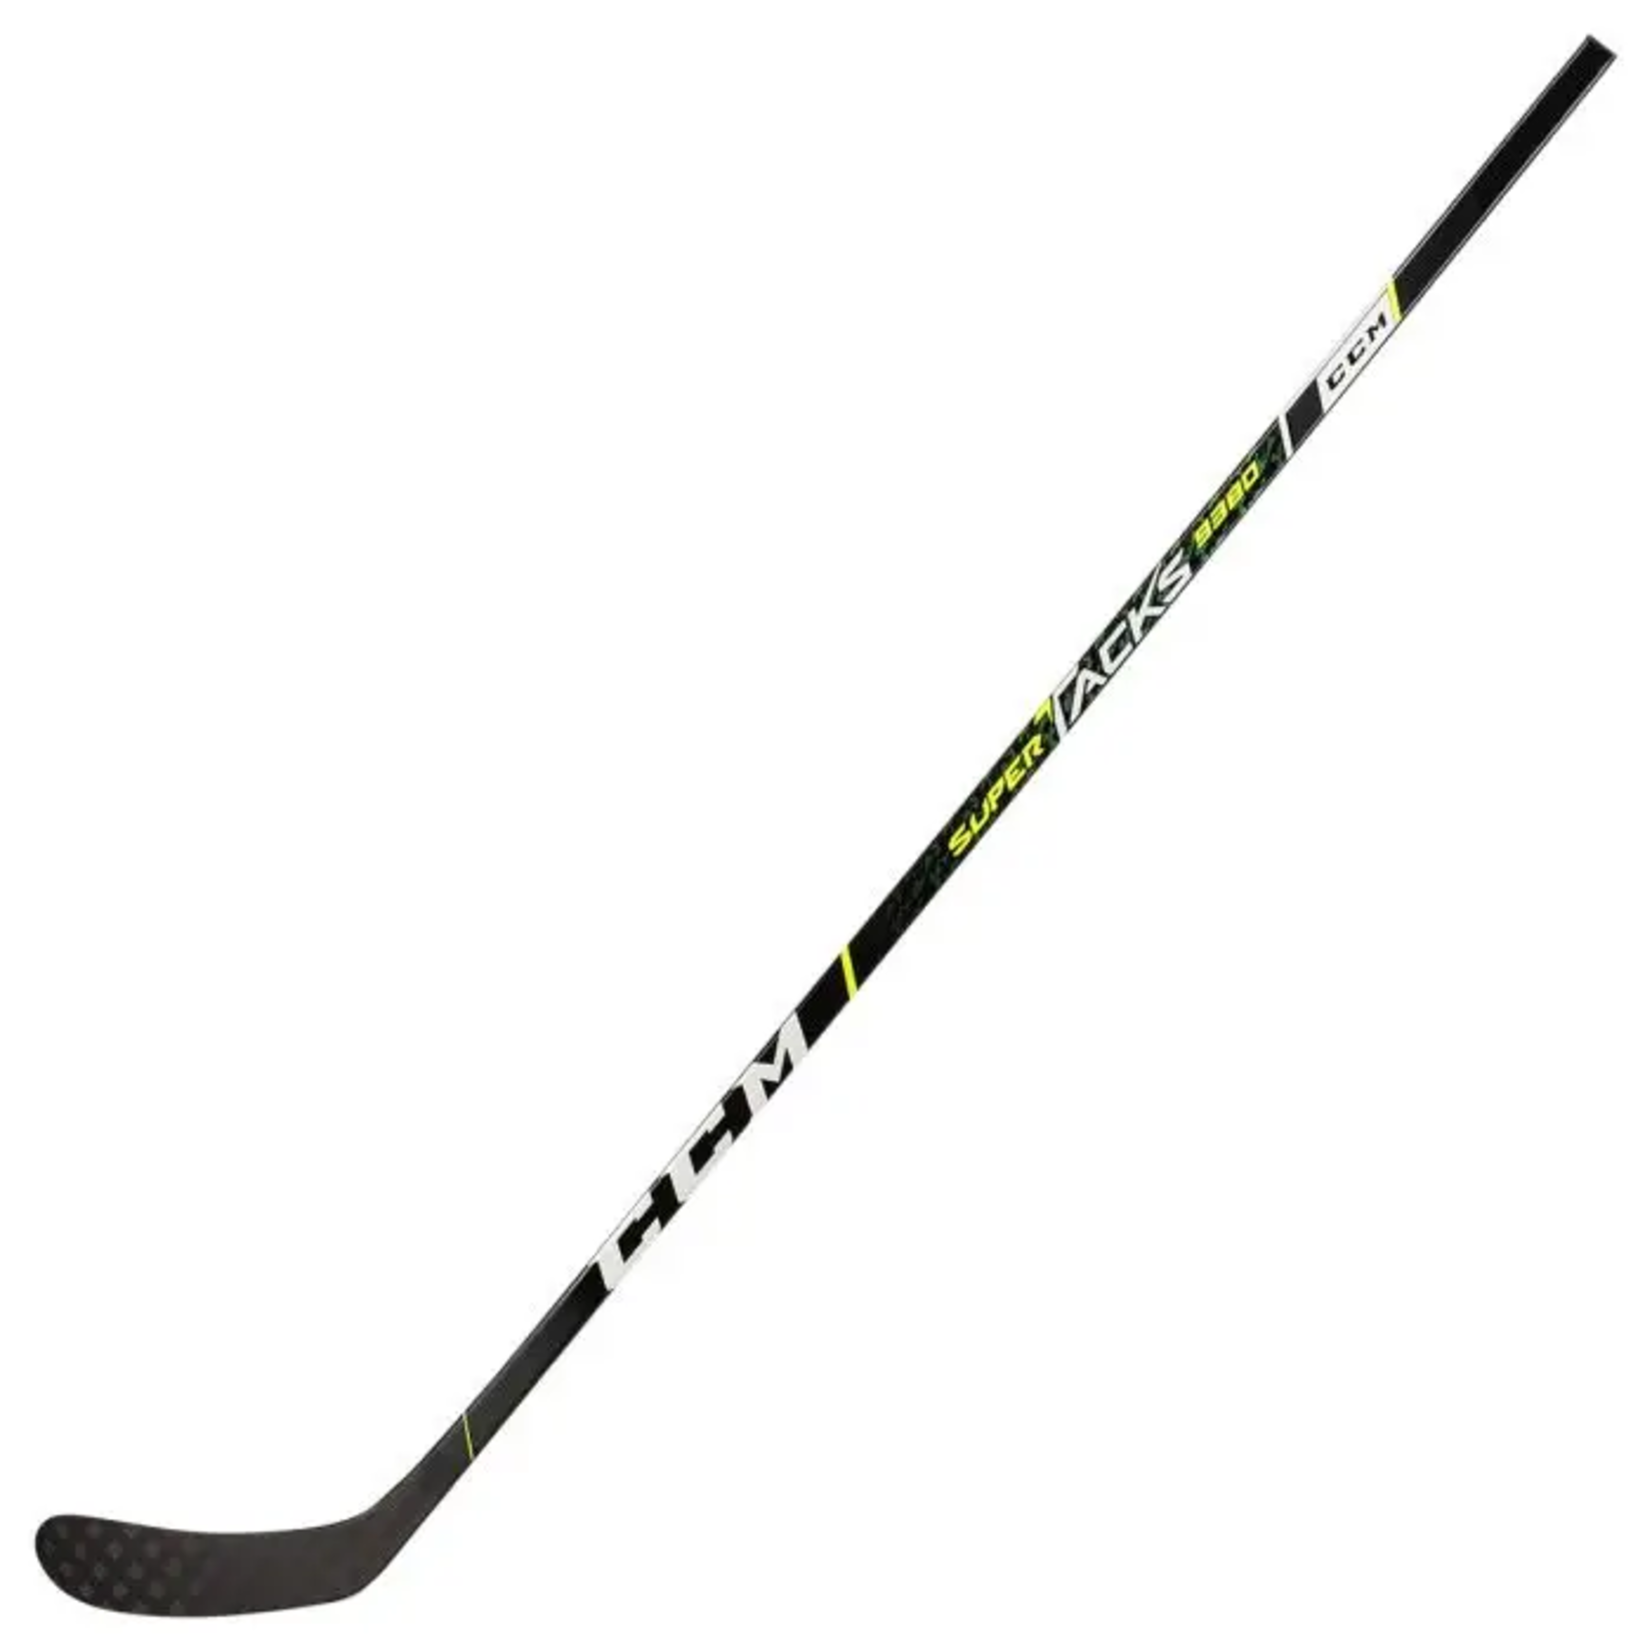 CCM CCM Hockey Stick, Super Tacks 9380, Senior